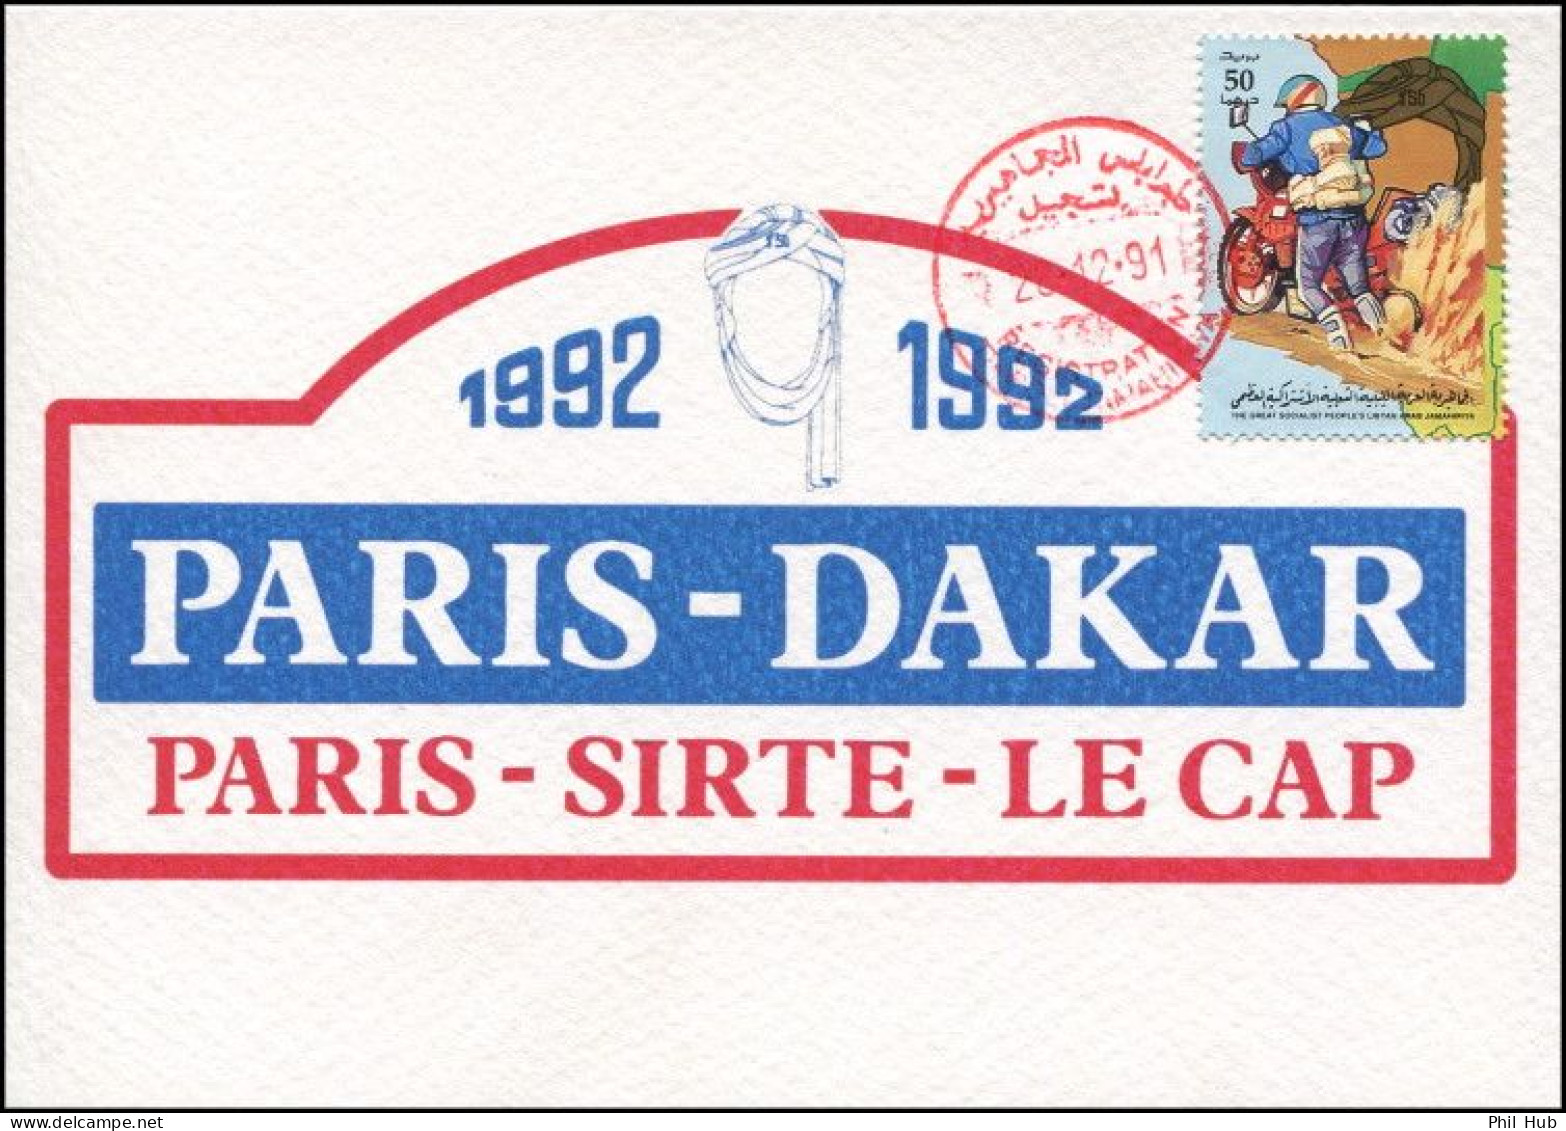 LIBYA 1991 Paris Dakar Rally Bikes (maximum-card) #2 - Moto